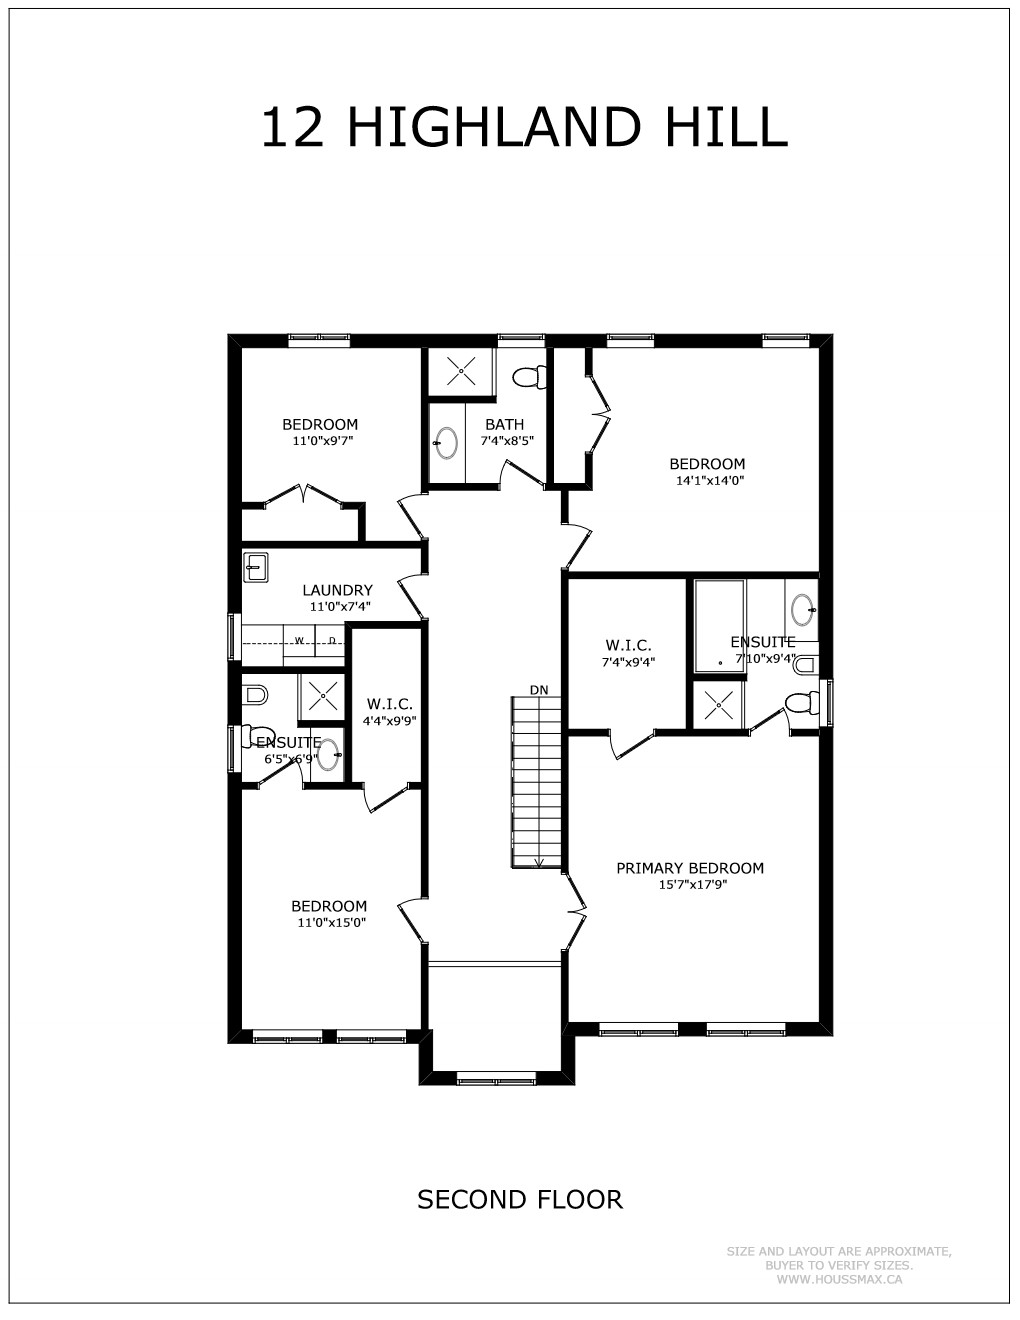 12 Highland Hill Floor Plan - Second Floor